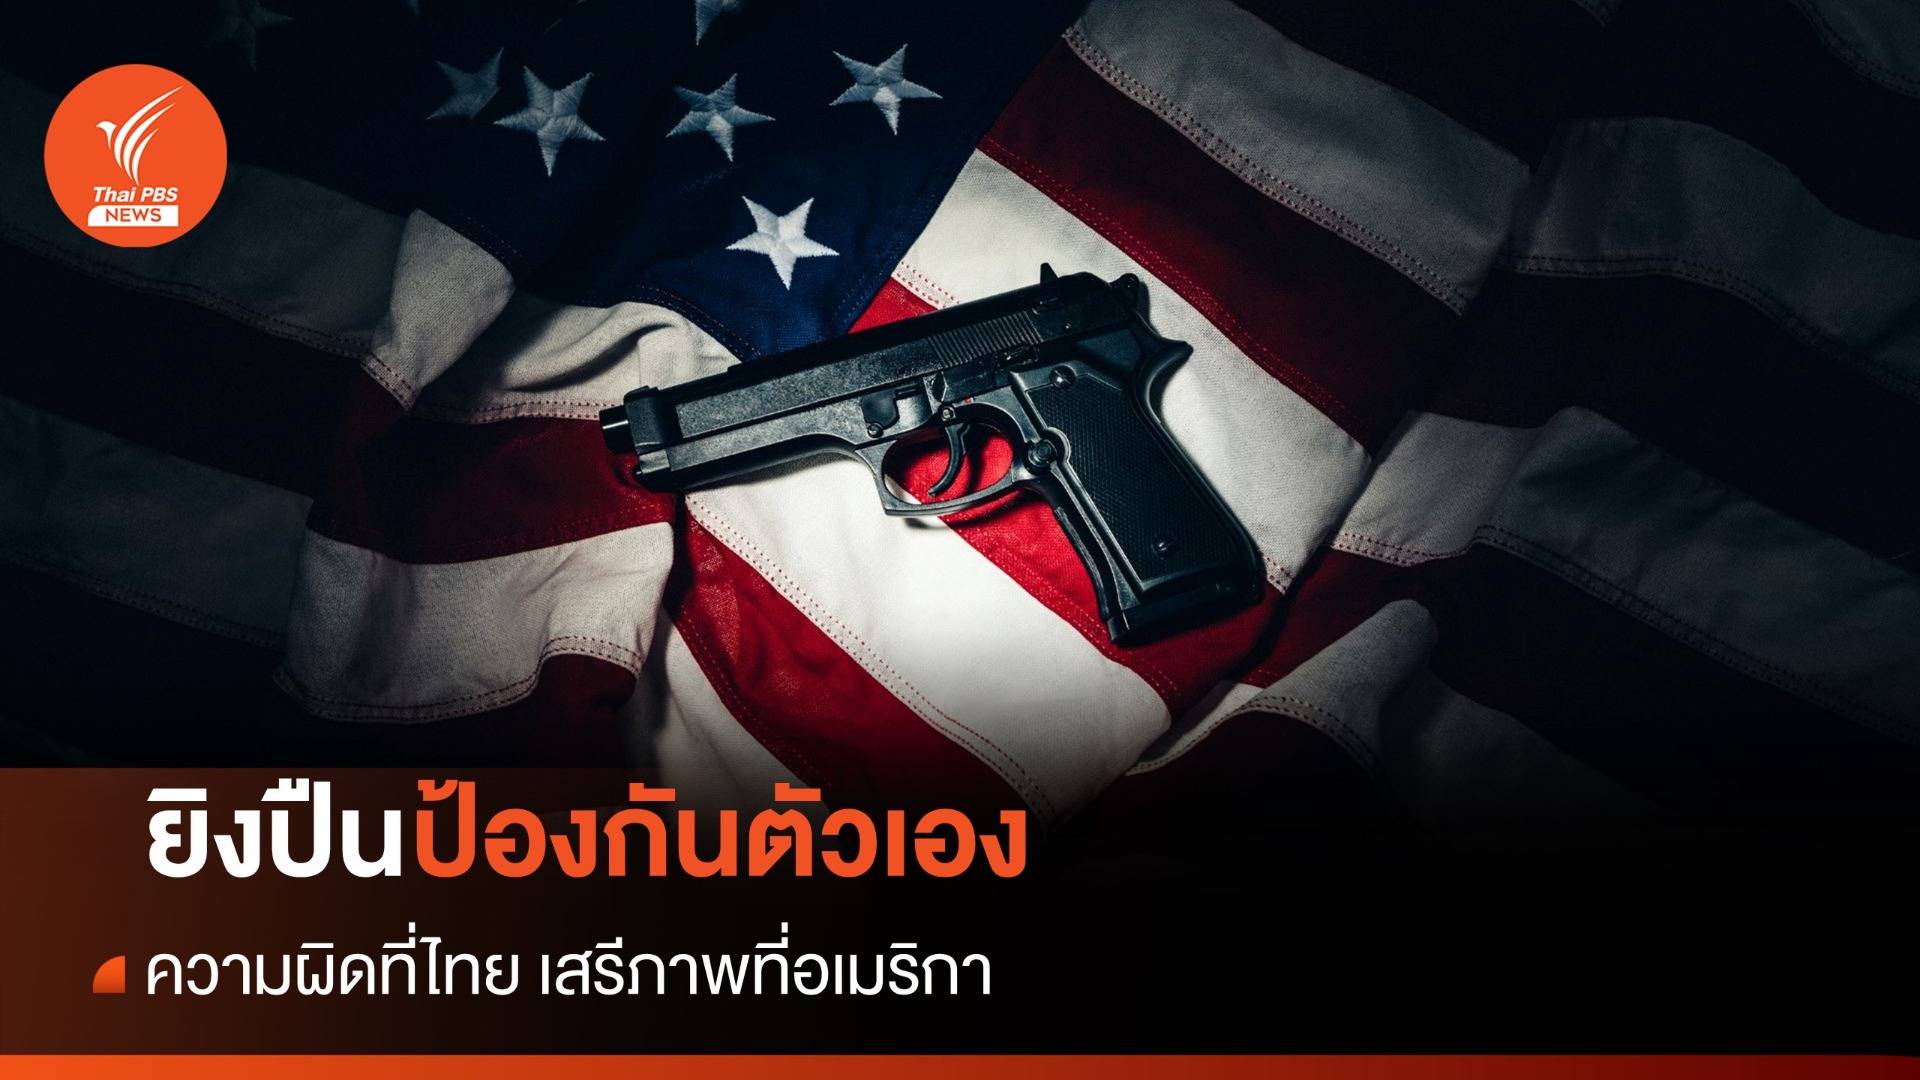 "ยิงปืนป้องกันตัวเอง" ความผิดที่ไทย เสรีภาพที่อเมริกา